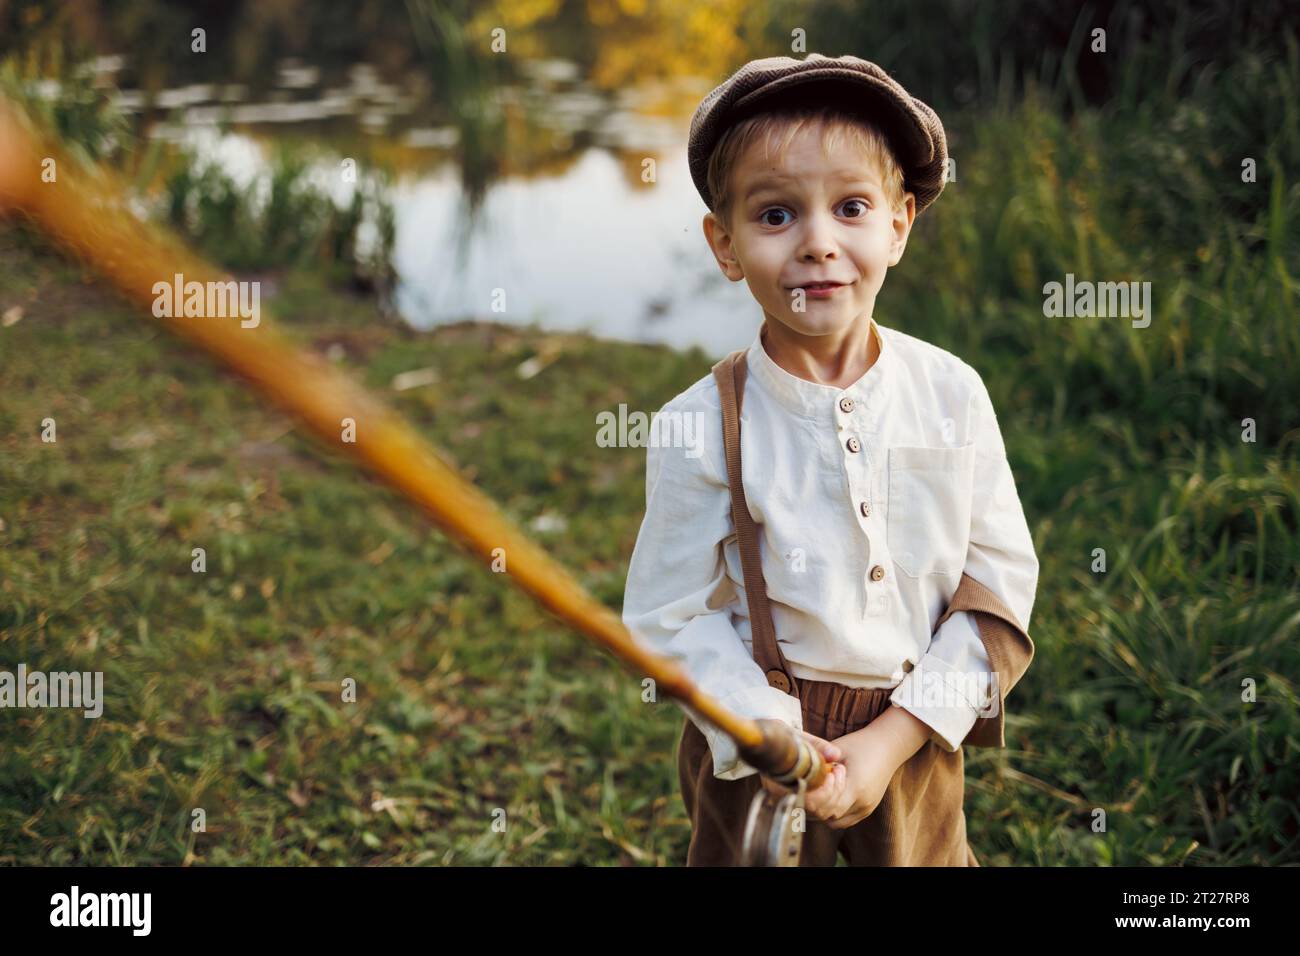 Enfant avec canne à pêche. Pêche enfant au lac d'automne Banque D'Images